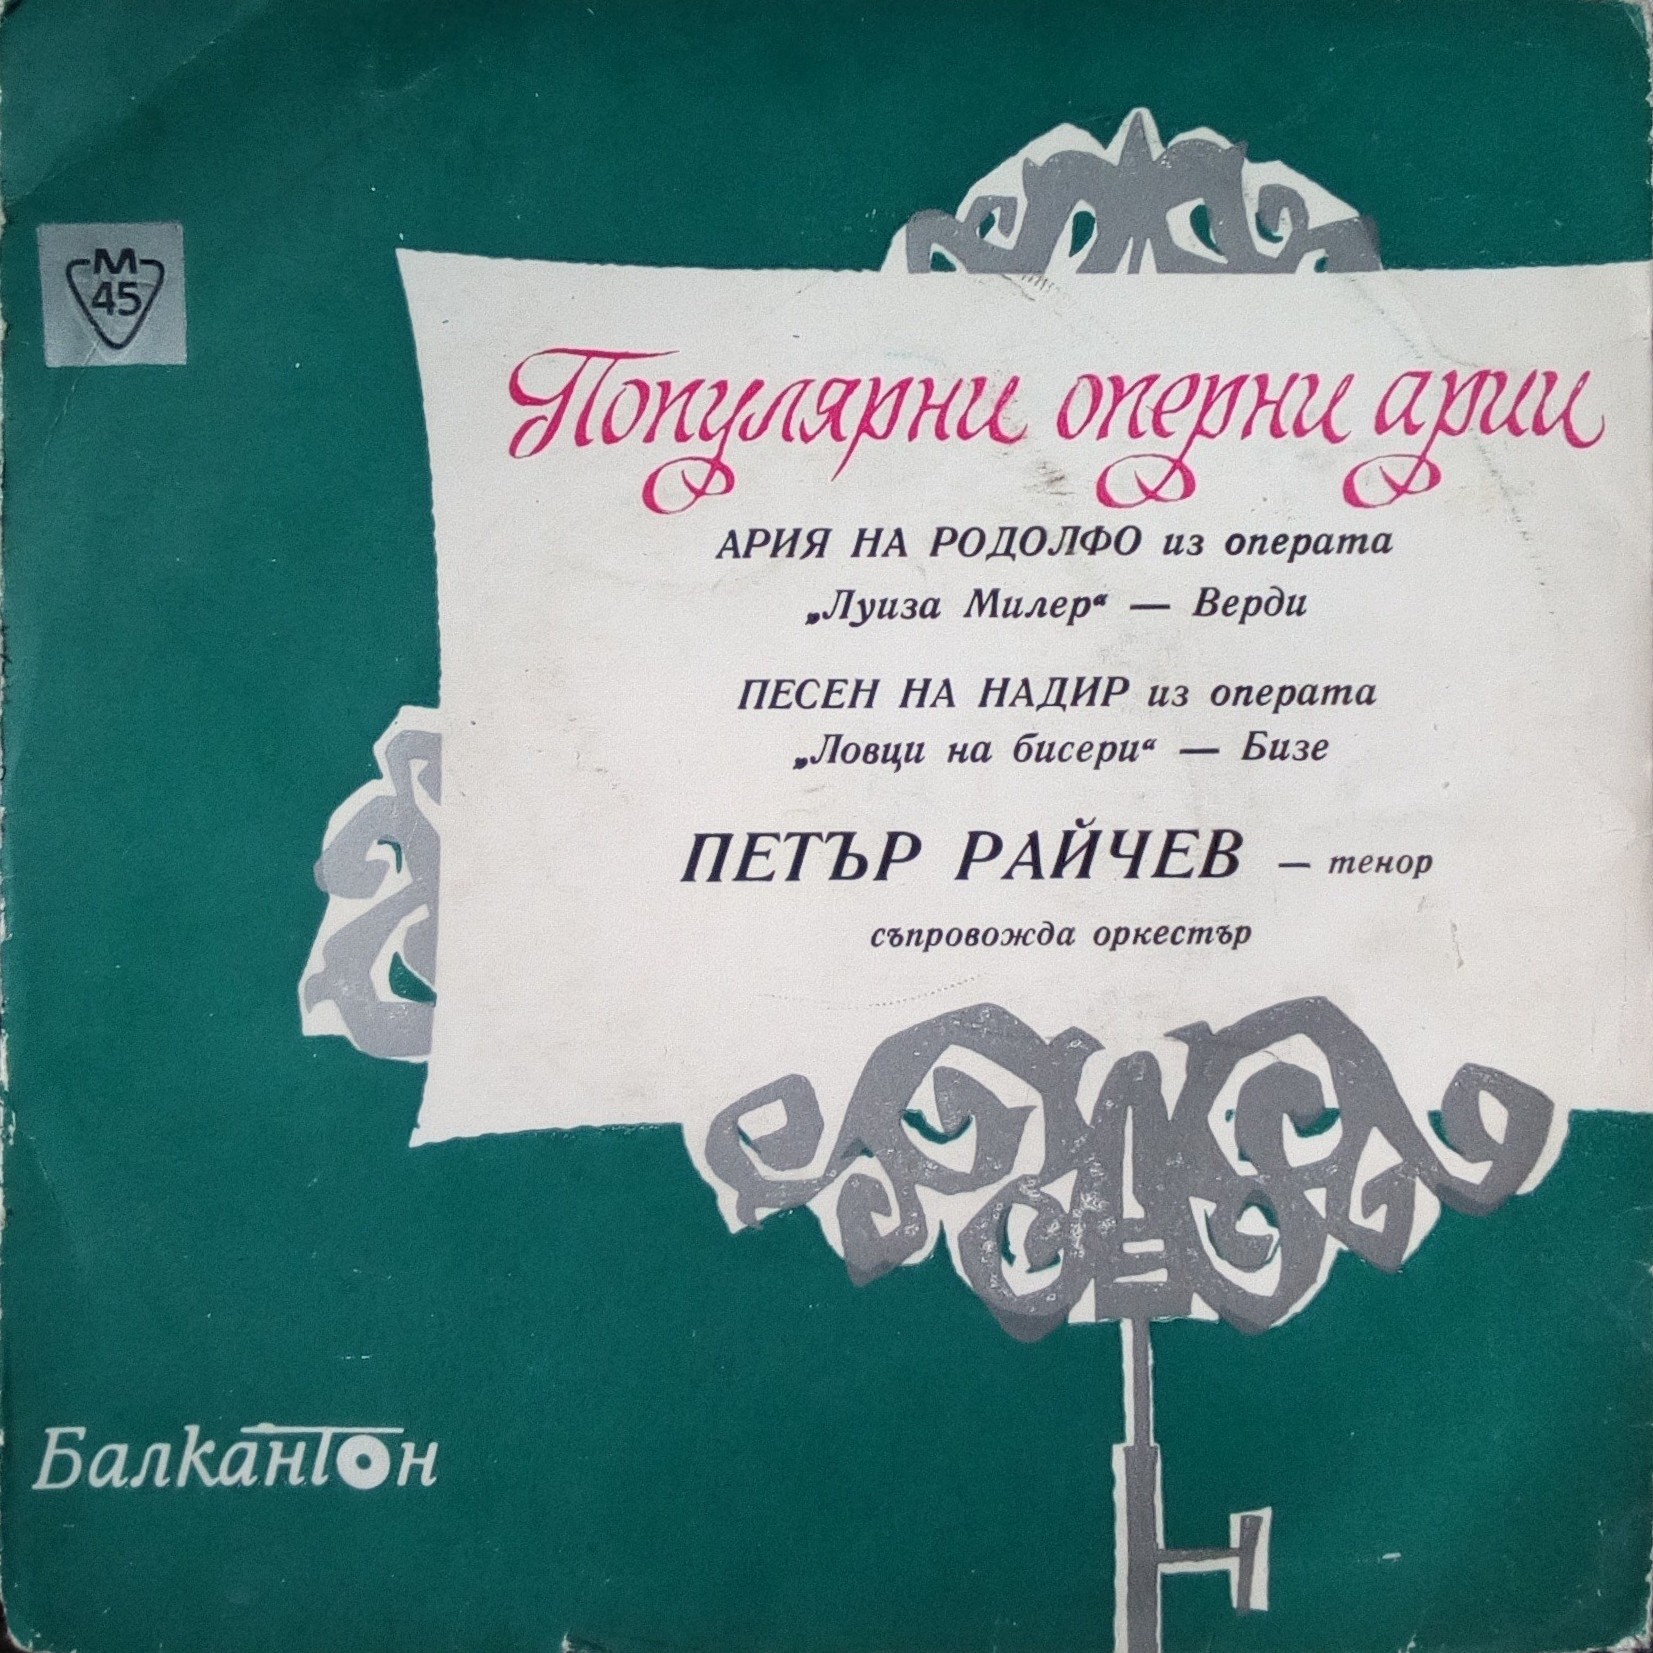 Популярни оперни арии. Петър РАЙЧЕВ - тенор